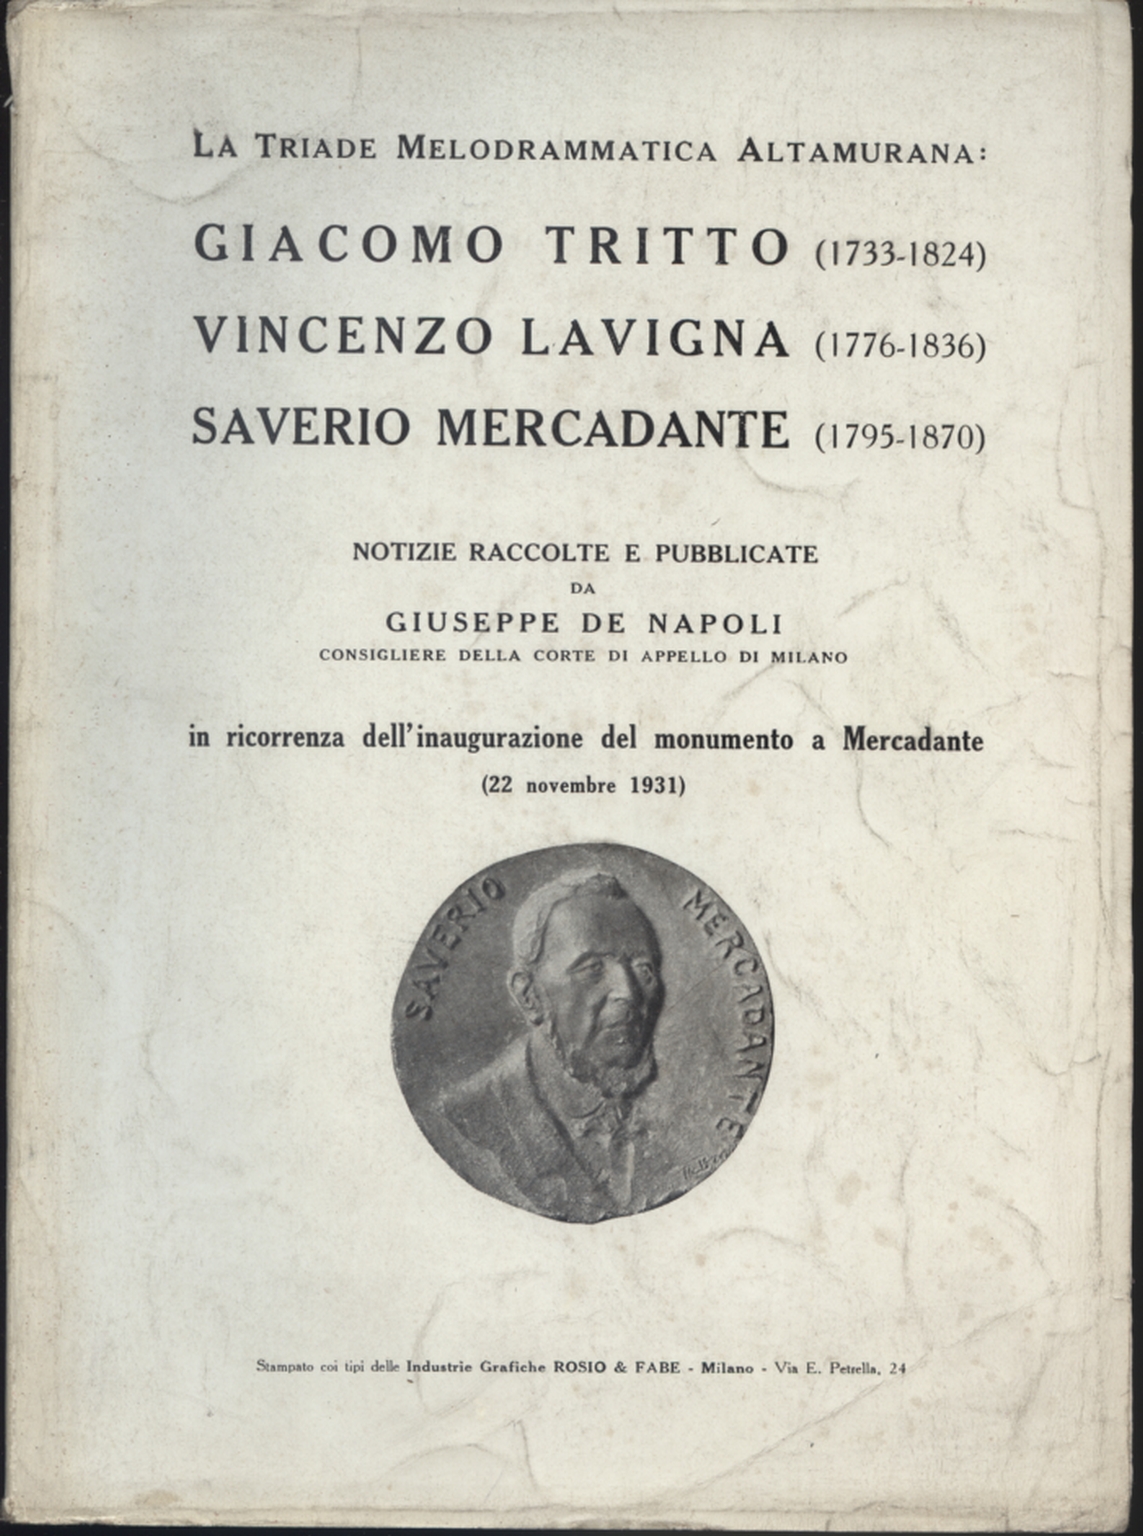 La Triade Melodrammatica Altamurana: Giacomo Tritt, Giuseppe De Napoli